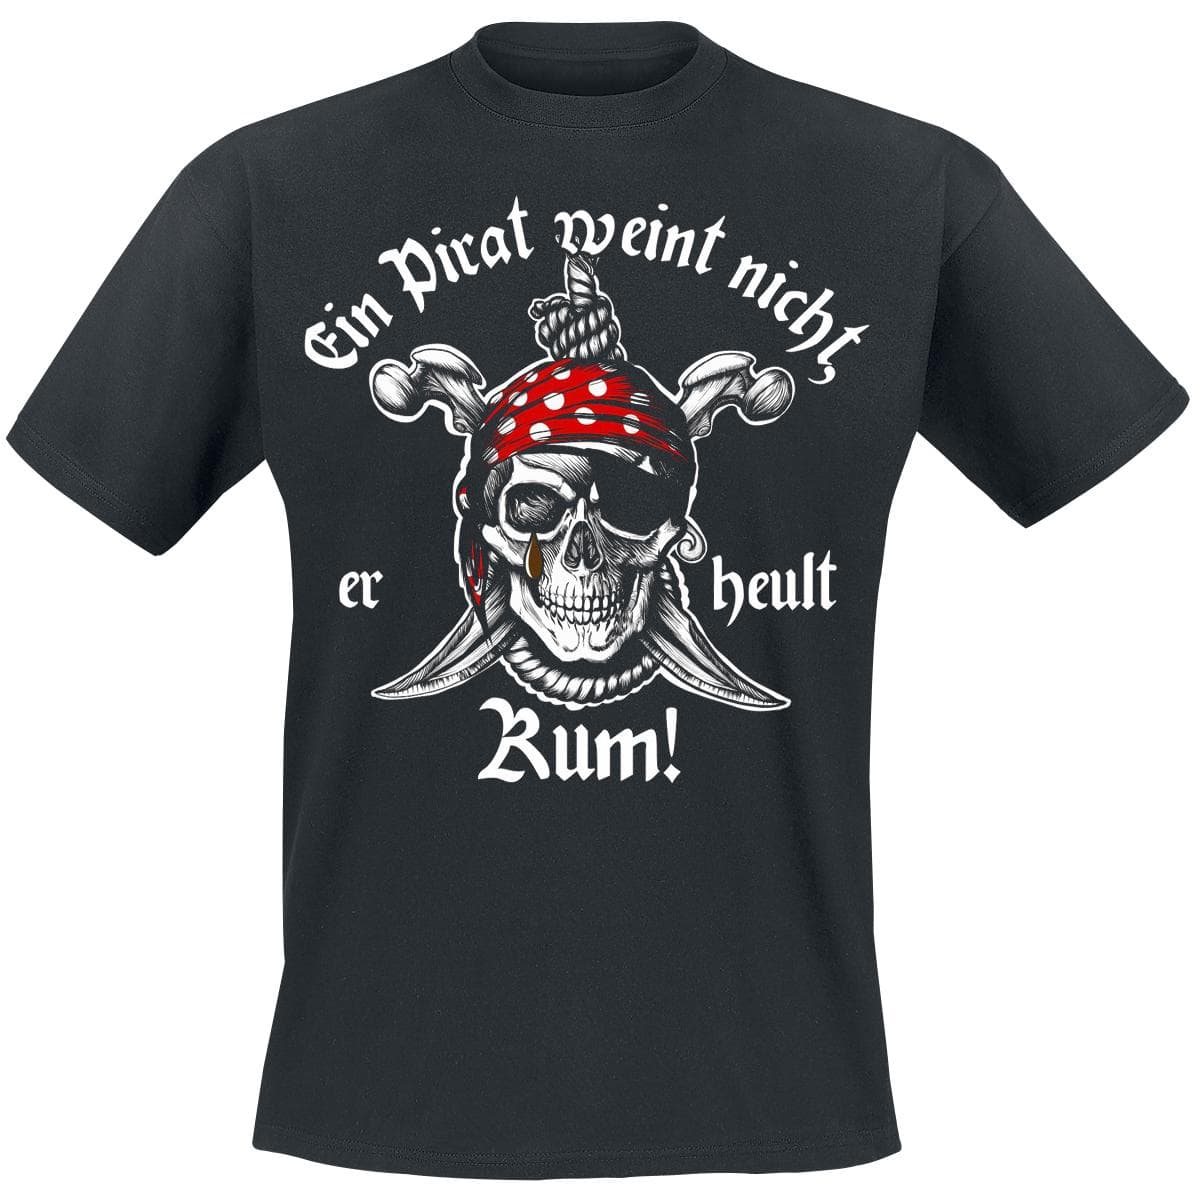 Ein Pirat weint nicht, er heult Rum